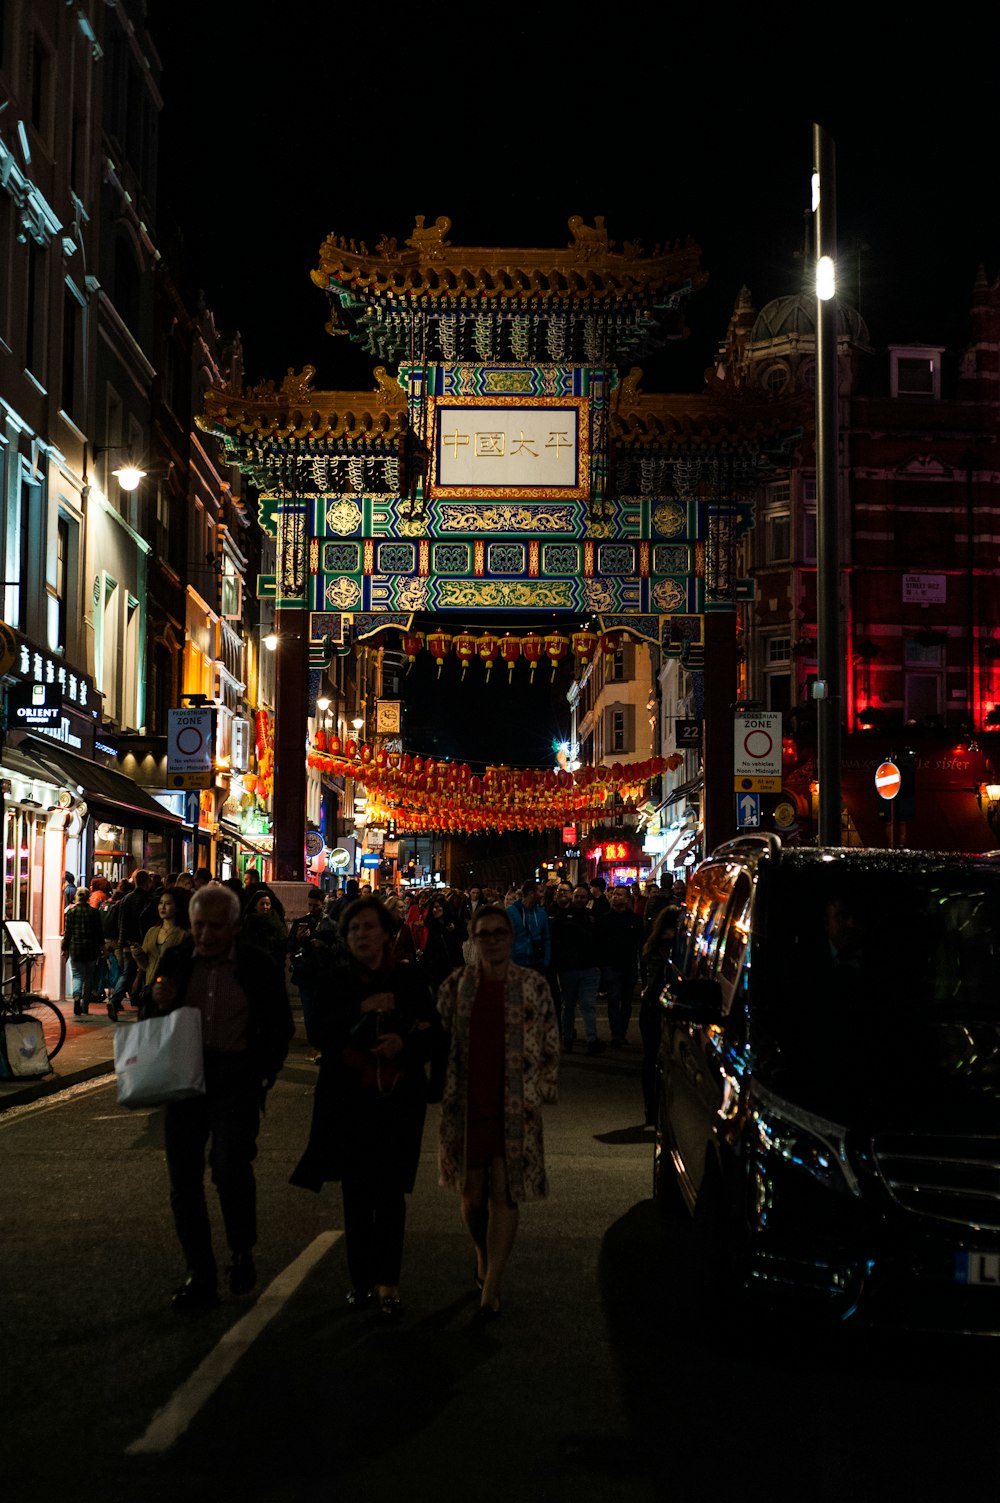 Persone che camminano vicino alla strada vicino al tempio durante la notte